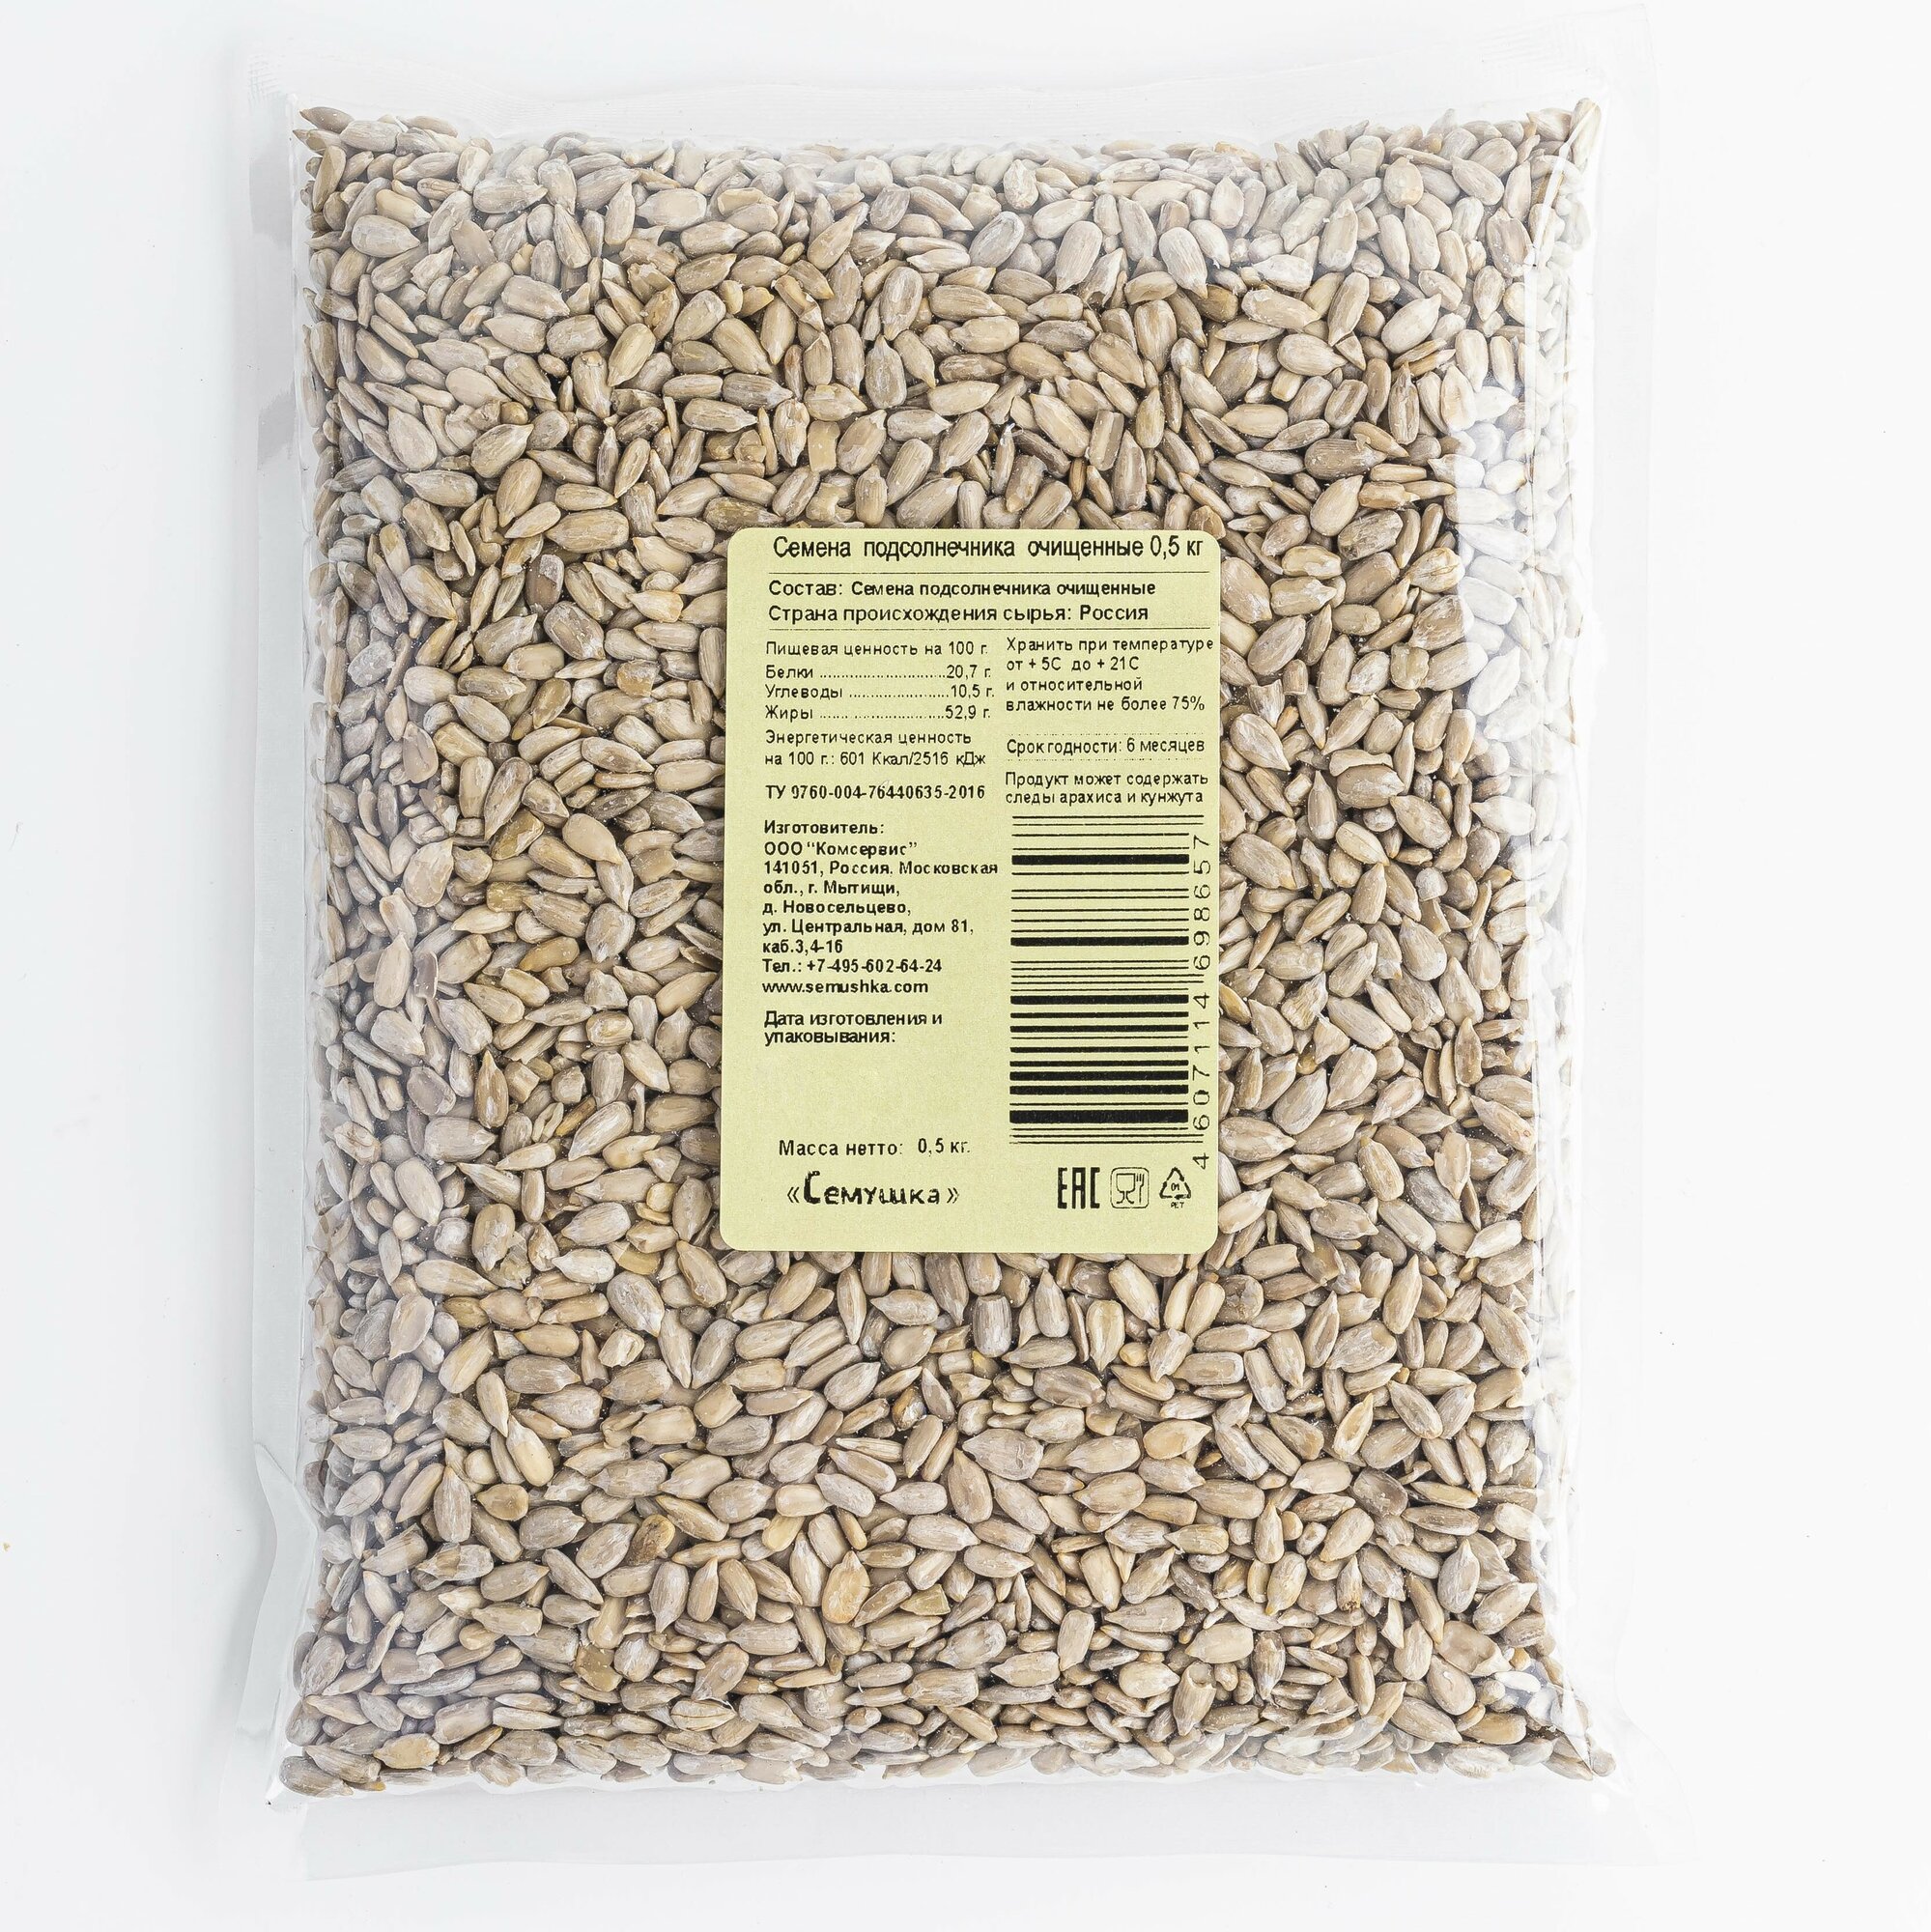 Семена подсолнечника очищенные (0,5 кг, россия)